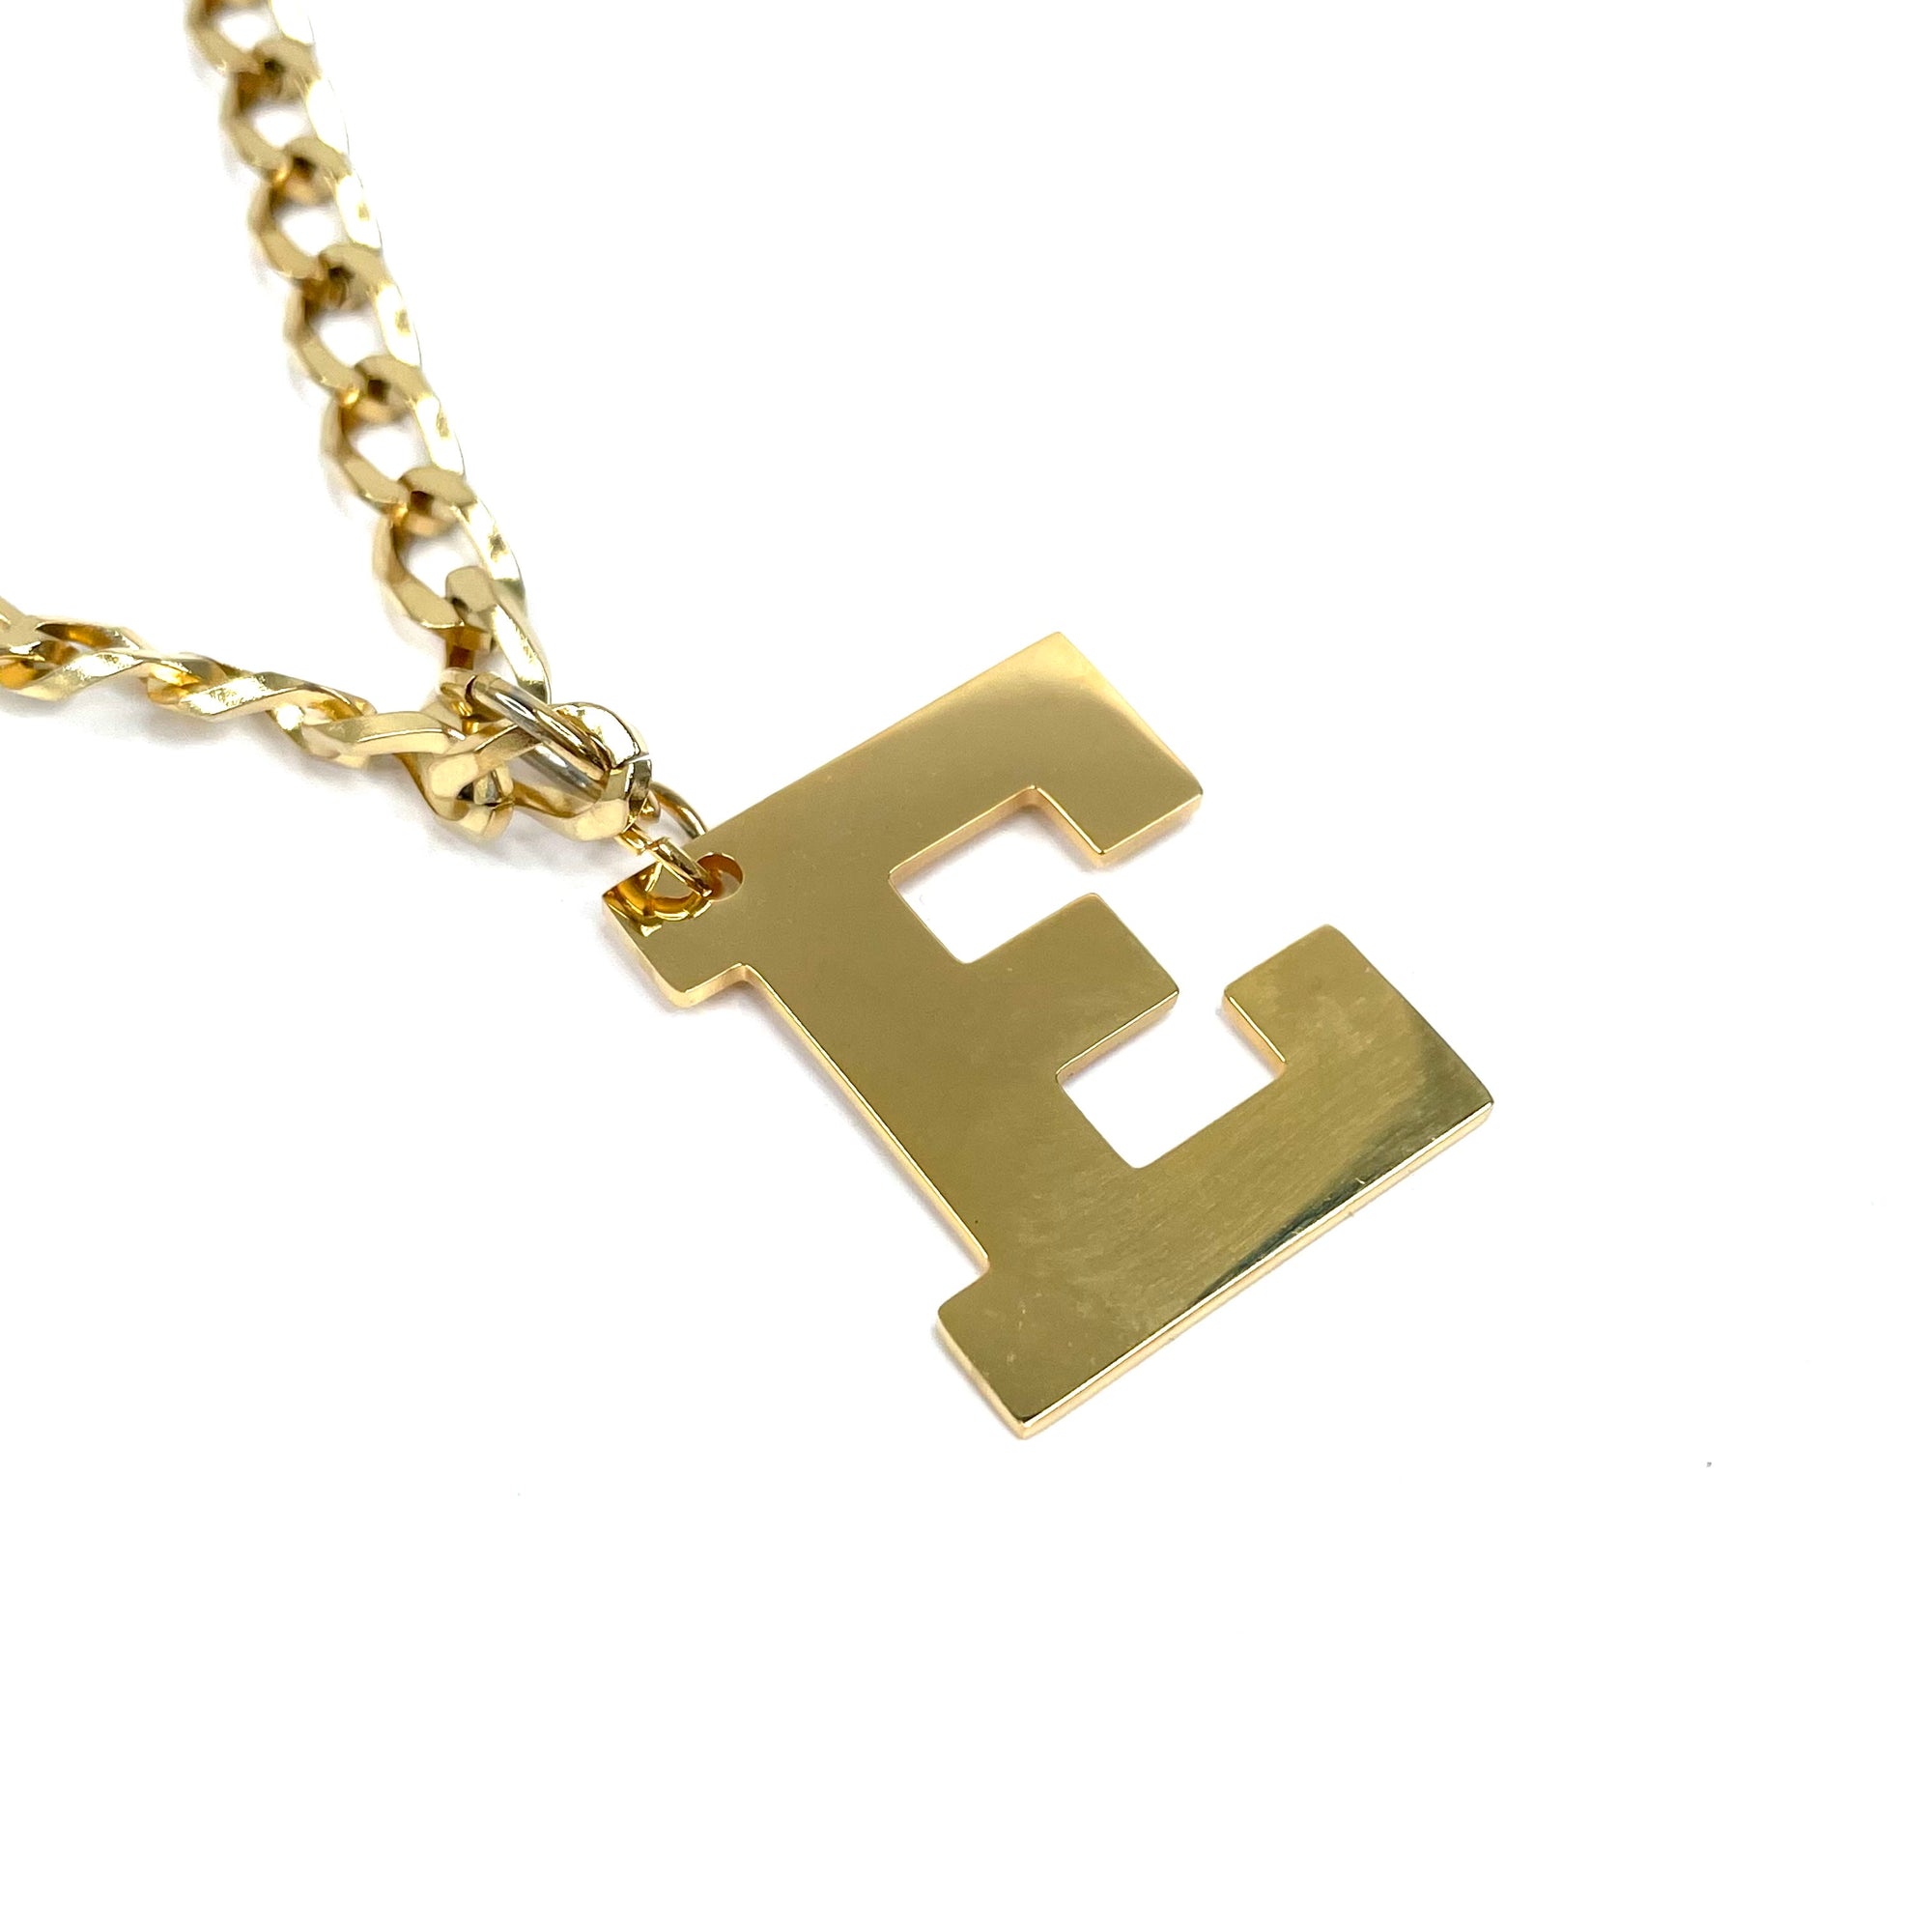 Lettering Legend Necklace Necklaces Cerese D, Inc. Gold E 